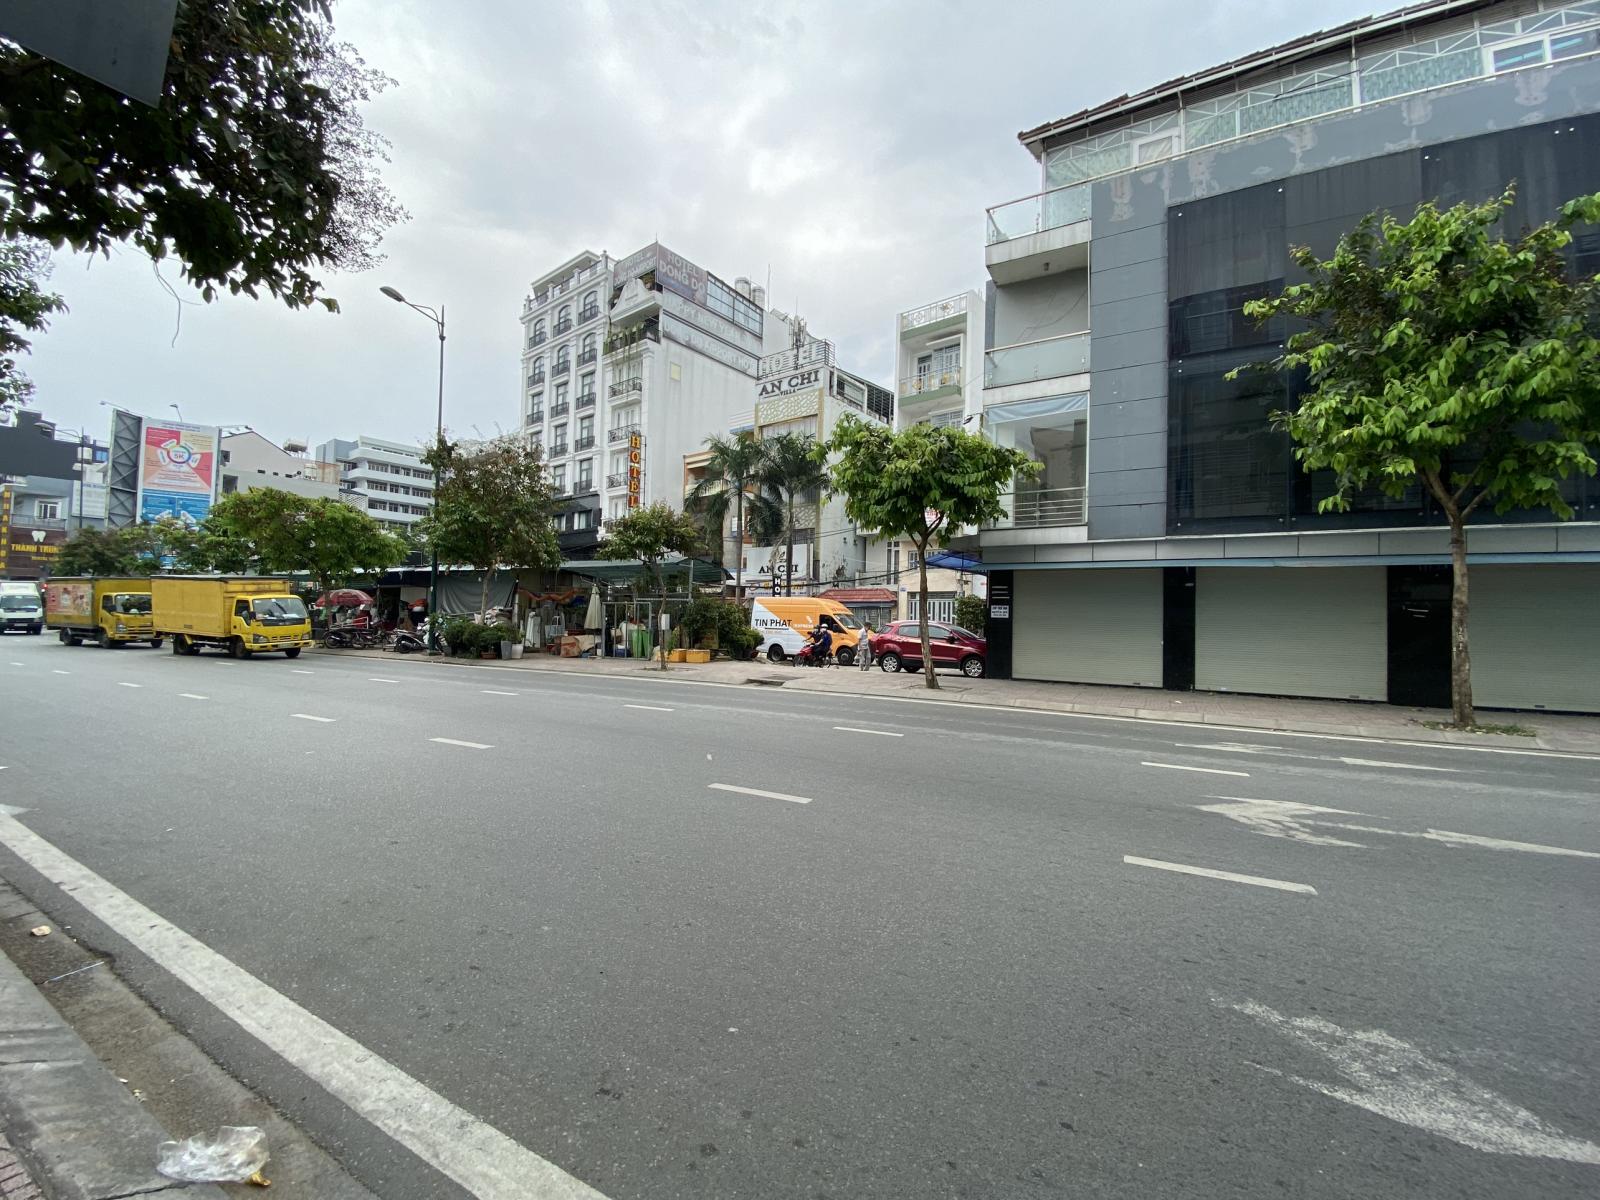 Bán nhà chính chủ mặt tiền đường Hồng Hà, P2, Q.Tân Bình. DT: 15m x 25m, trệt, 1 lầu.